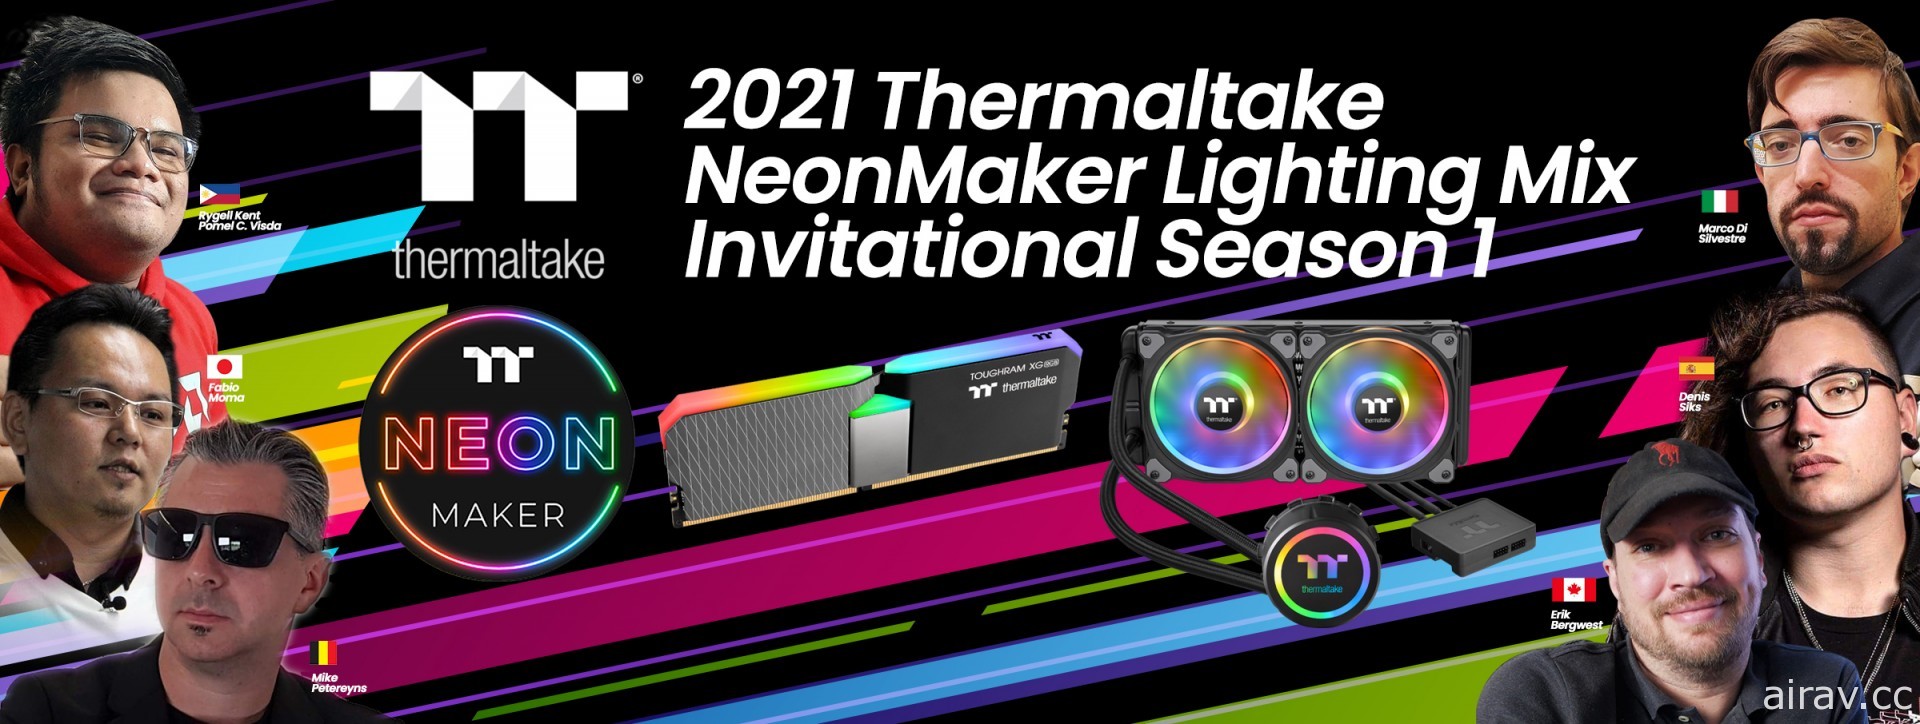 2021 曜越 NeonMaker 炫光爭霸賽第一季正式啟動 邀請多位好手打造獨特燈光秀